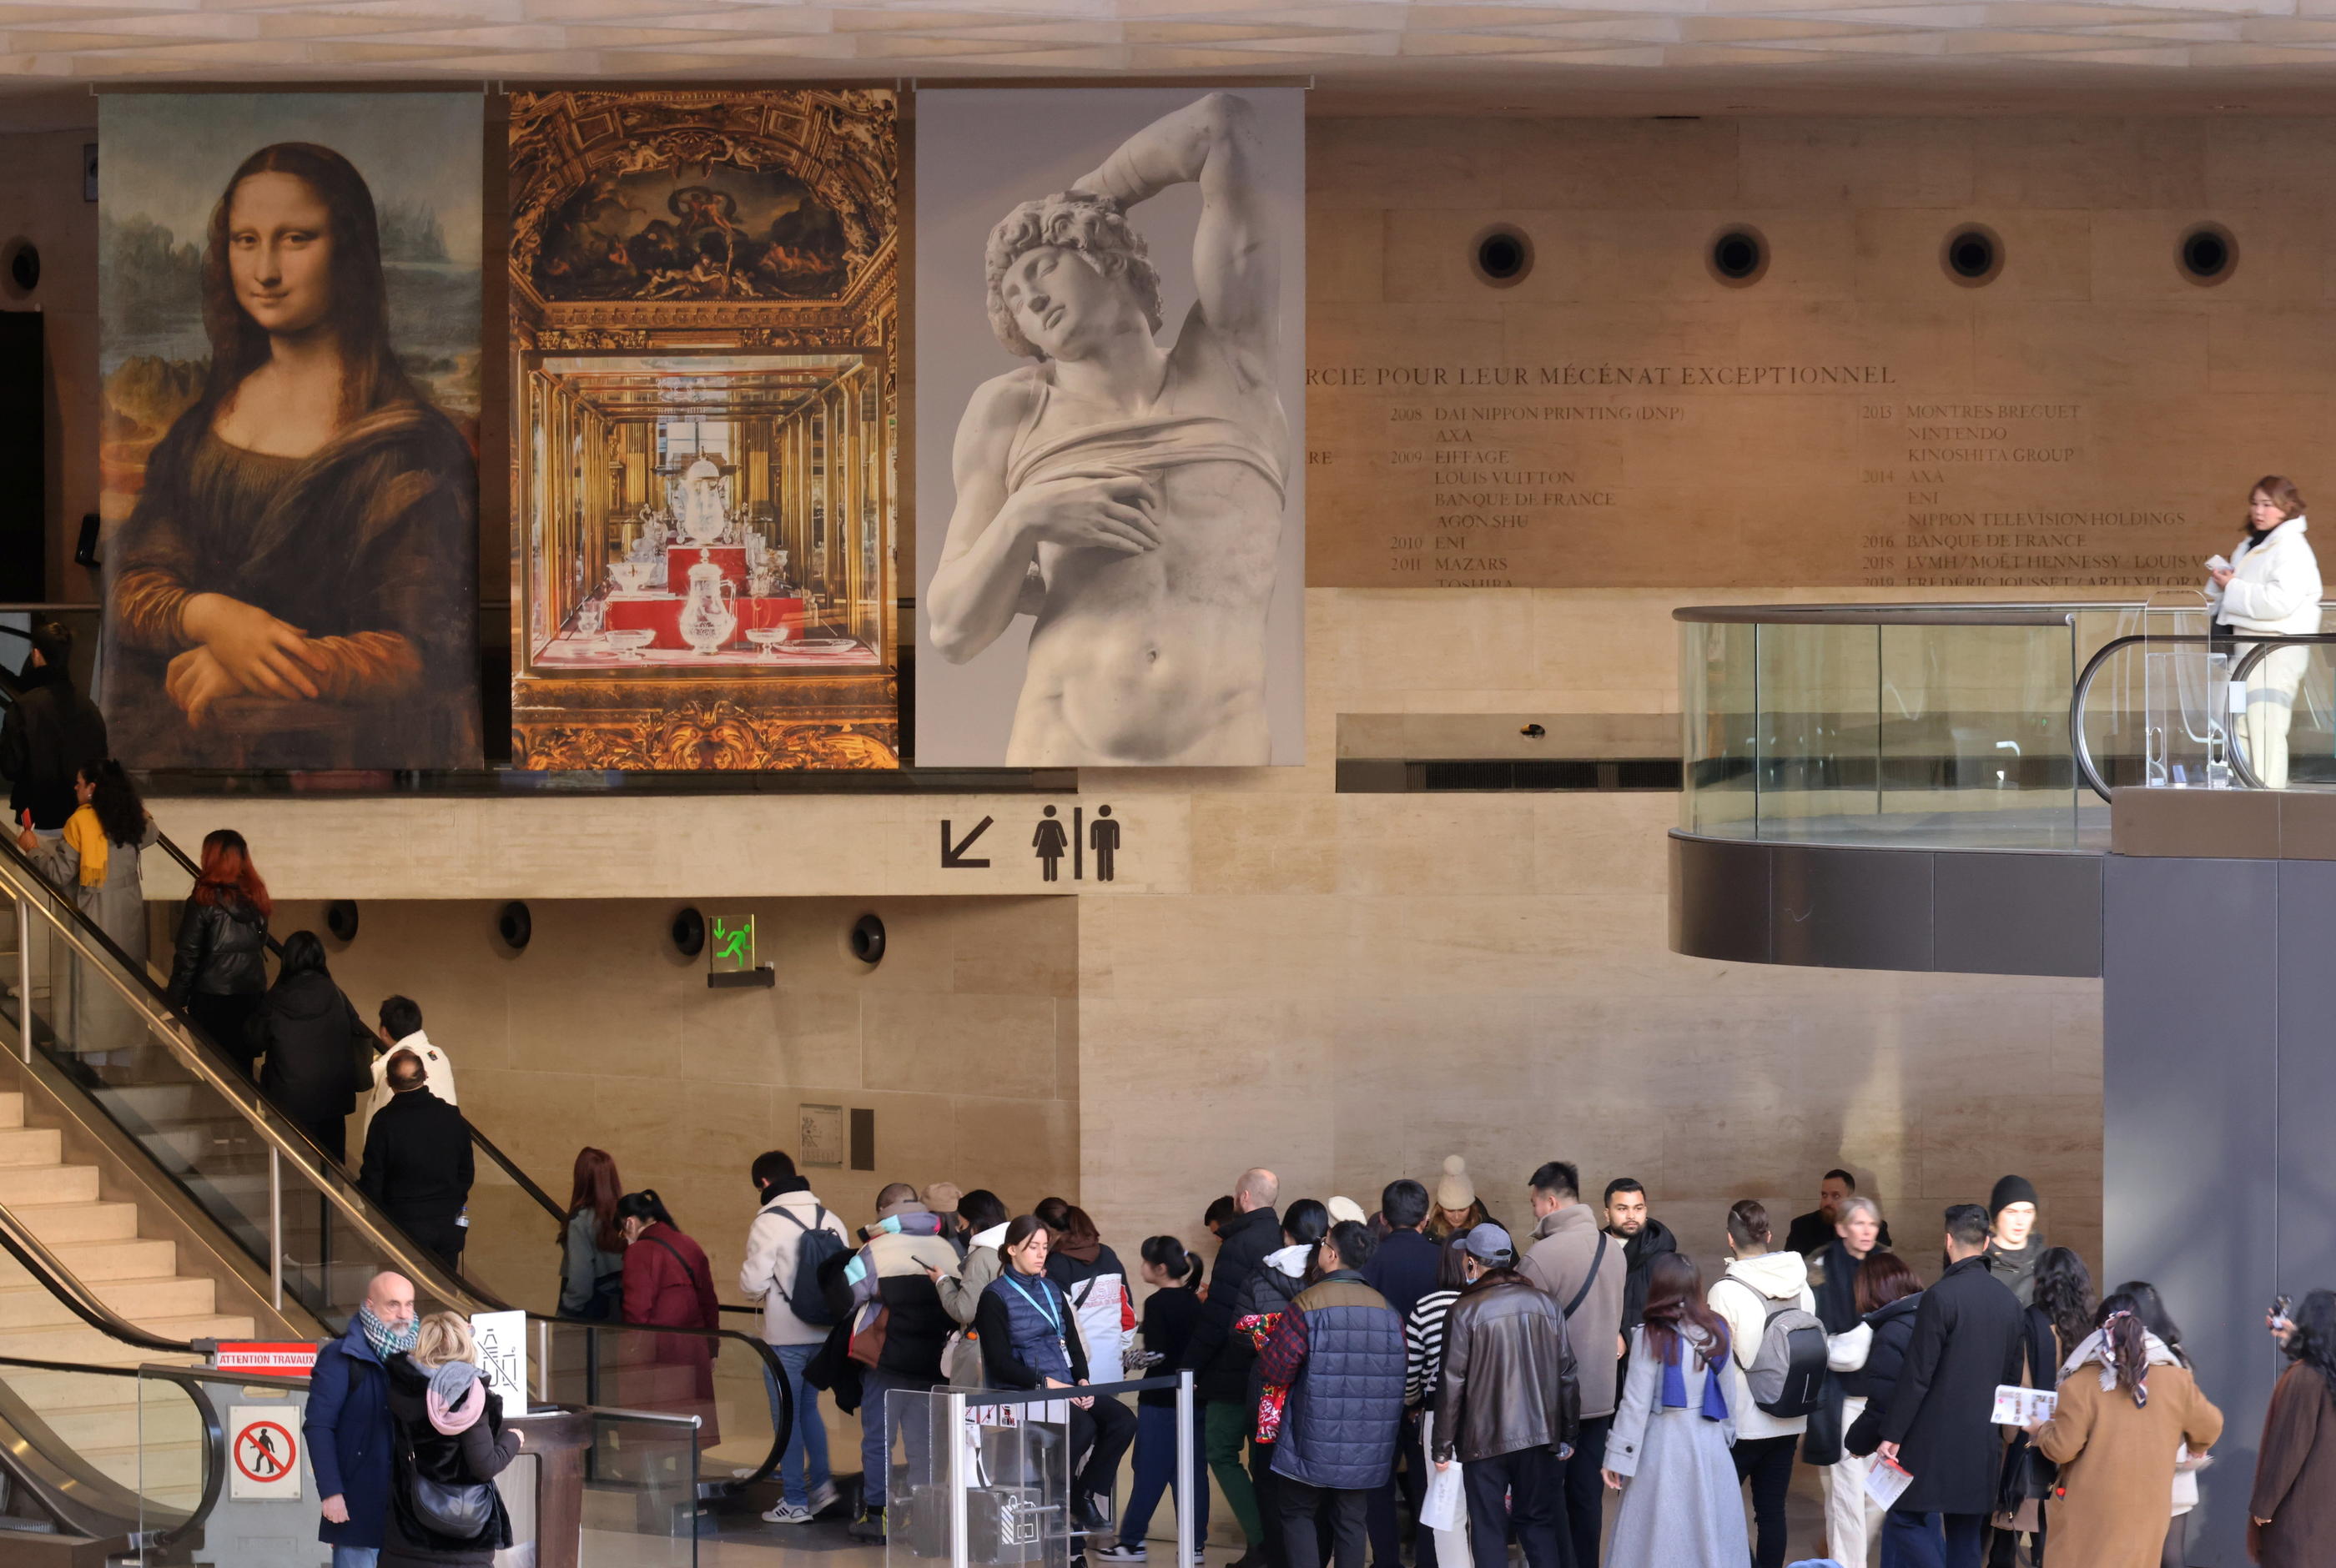 Ce lundi 15 janvier, les touristes étaient nombreux à se presser dans le plus grand musée du monde. Tous déplorent des tarifs excessifs, justifiés selon la direction par l'augmentation du coût de l'énergie. LP/Delphine goldsztejn